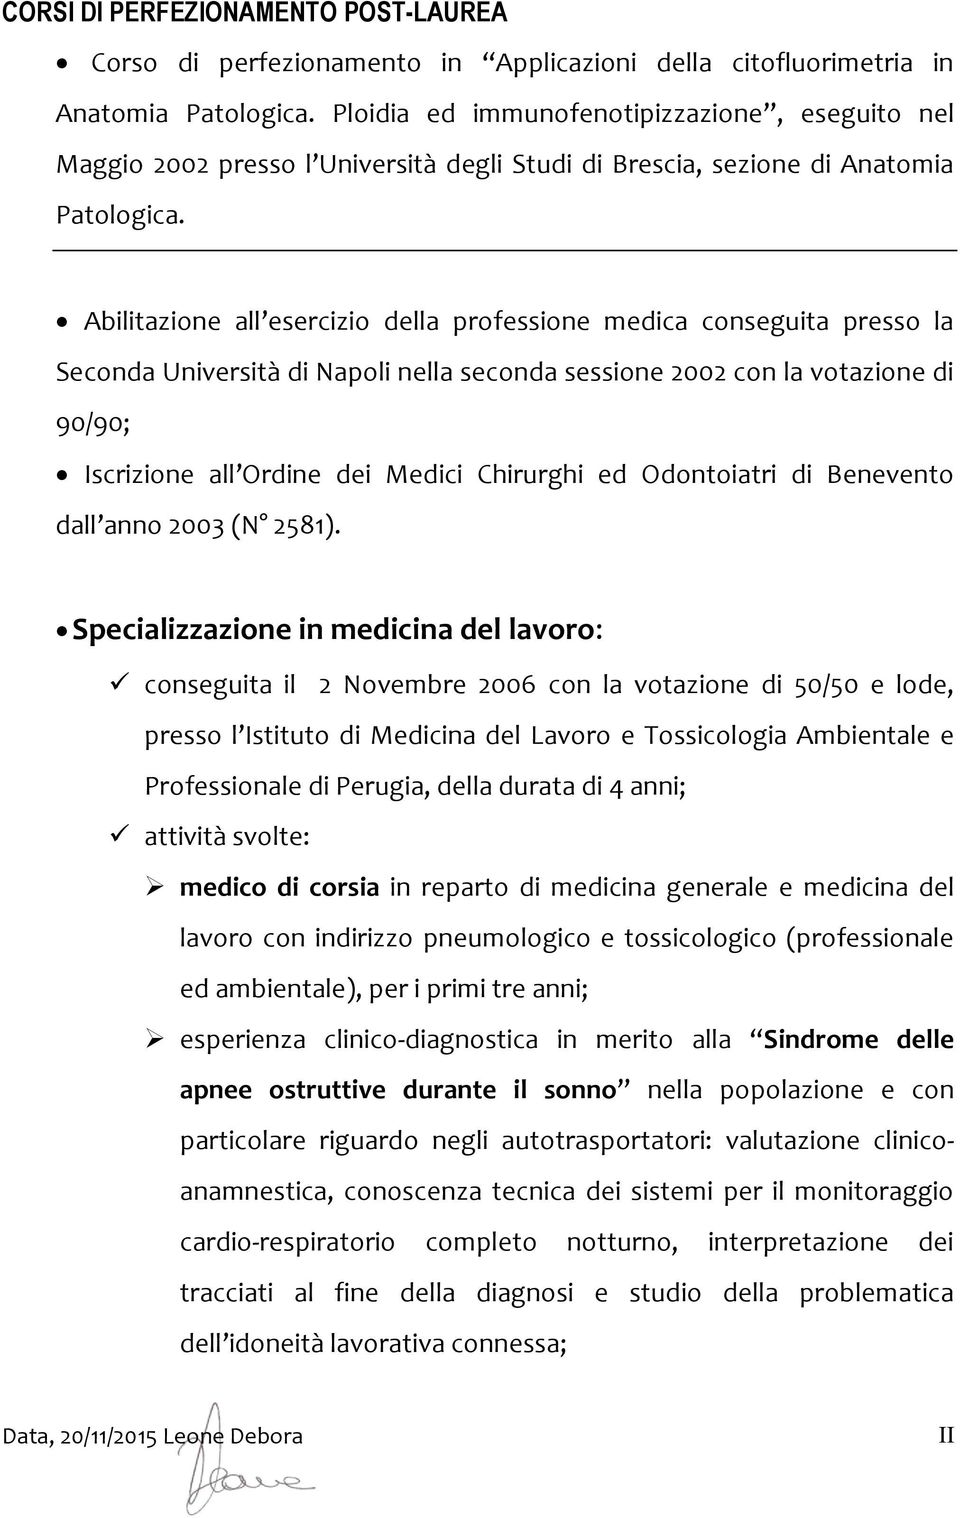 Abilitazione all esercizio della professione medica conseguita presso la Seconda Università di Napoli nella seconda sessione 2002 con la votazione di 90/90; Iscrizione all Ordine dei Medici Chirurghi